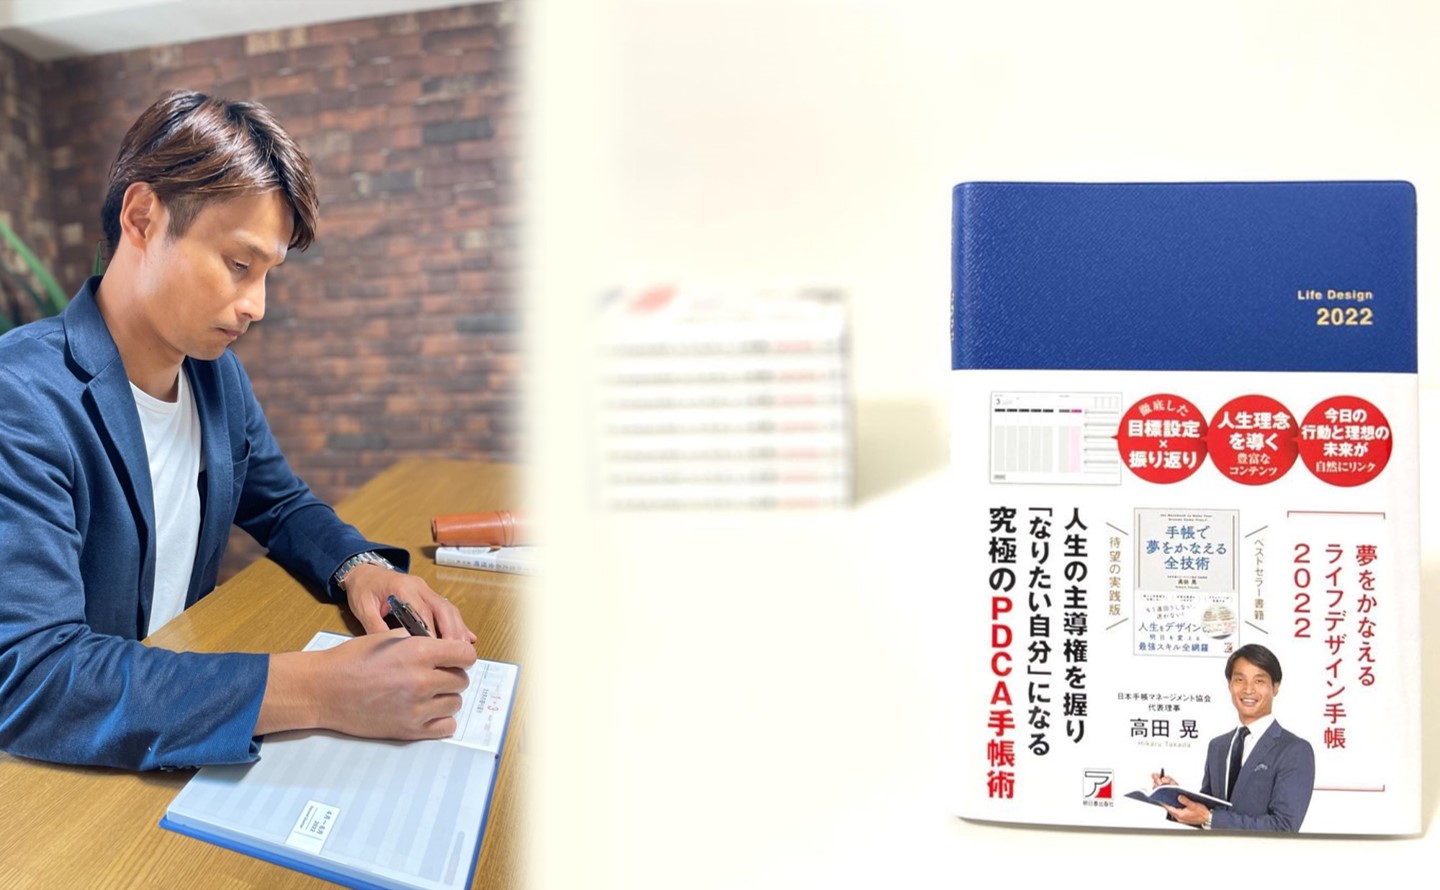 高田監修のノート型手帳『夢をかなえるライフデザイン手帳2022』が発売されました！